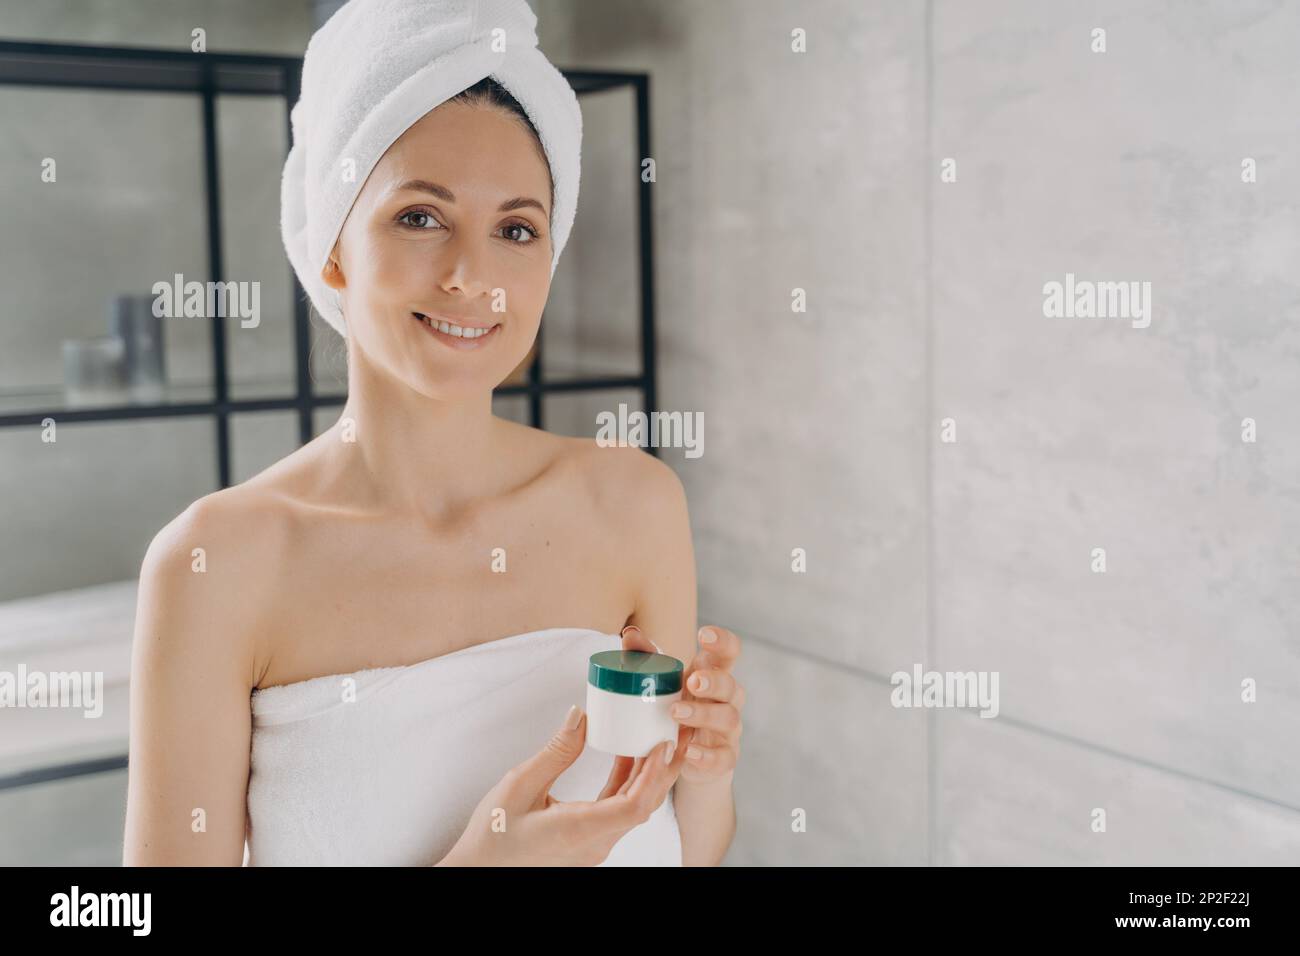 Hübsche hispanische Frau, die ein Modell-Kosmetikglas mit Sahne oder Serum hält, Werbung für Hautpflege Feuchtigkeits-Kosmetikprodukt. Frau im Handtuch nach dem Duschen Stockfoto